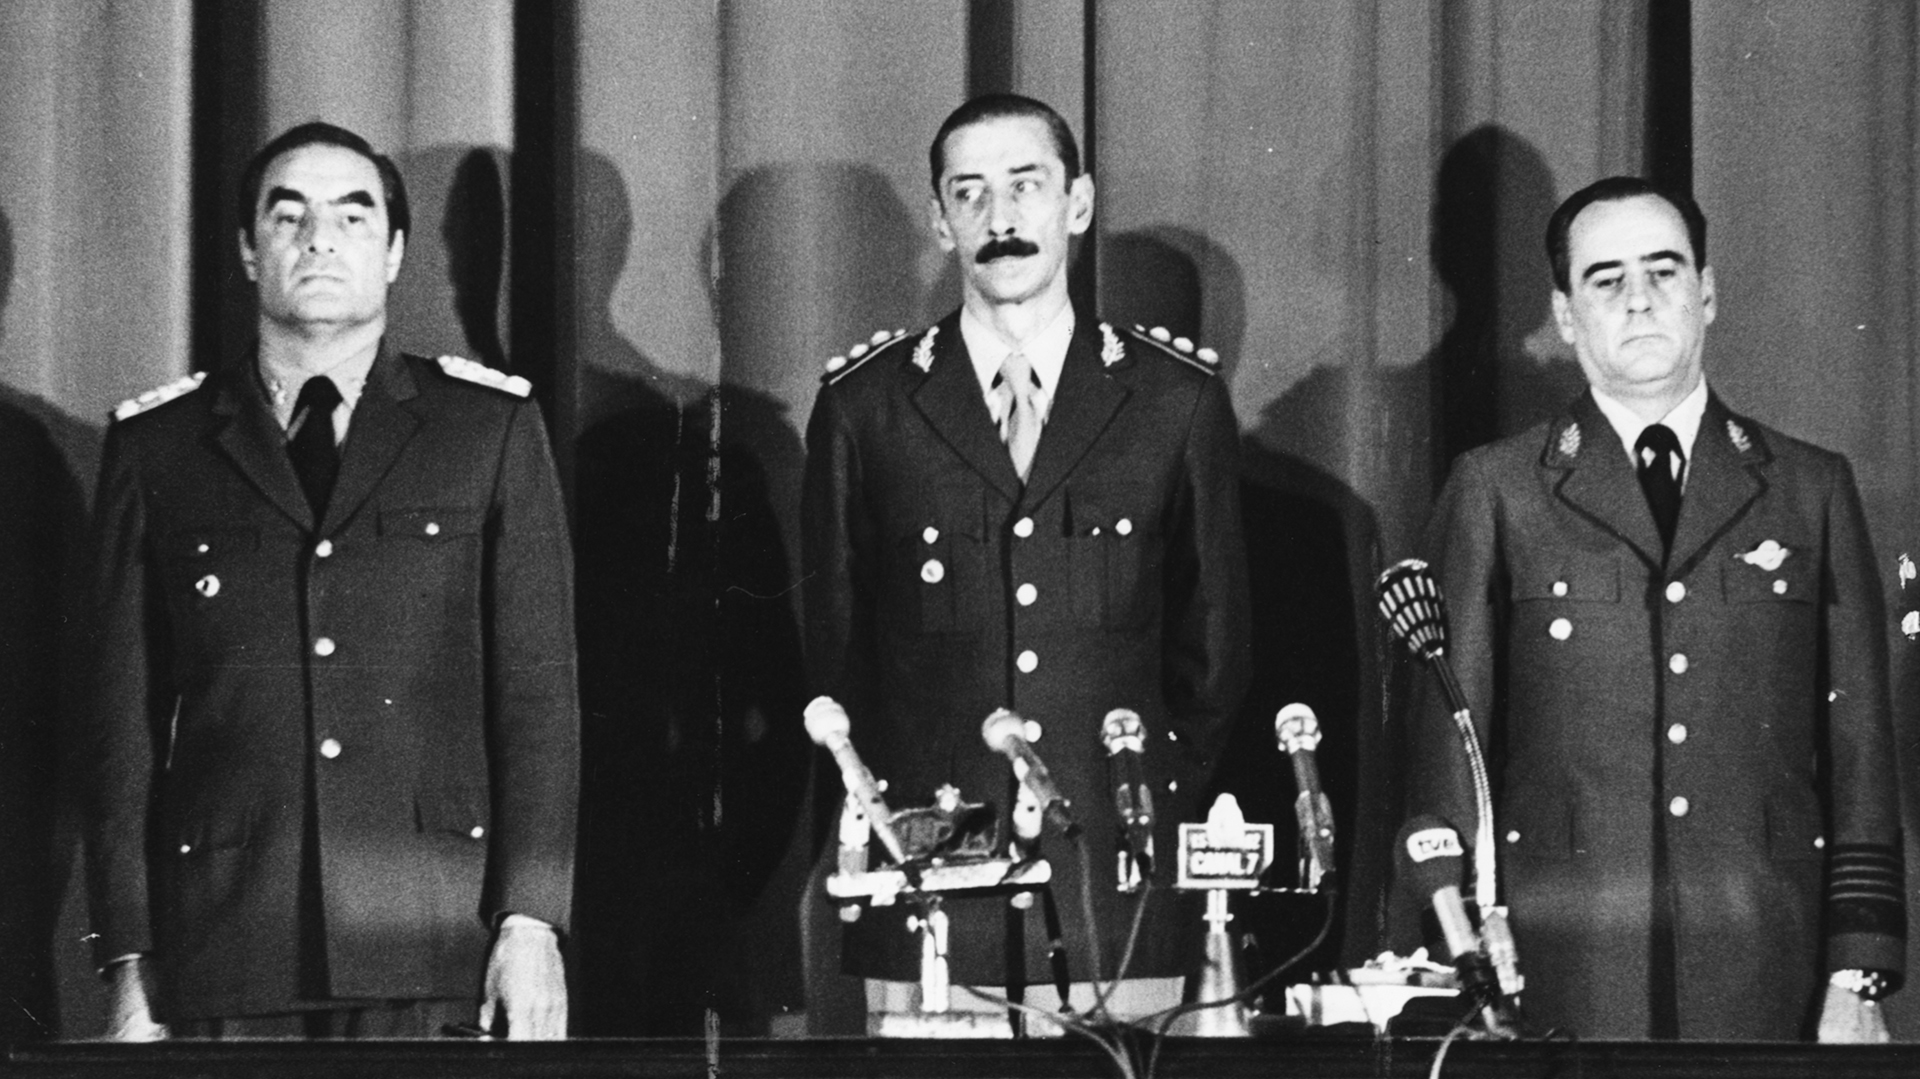 La Junta Militar que encabezó el golpe de estado de 1976 e instauró una sangrienta dictadura: Emilio Massera, Jorge Rafael Videla, Orlando Agosti (Getty)